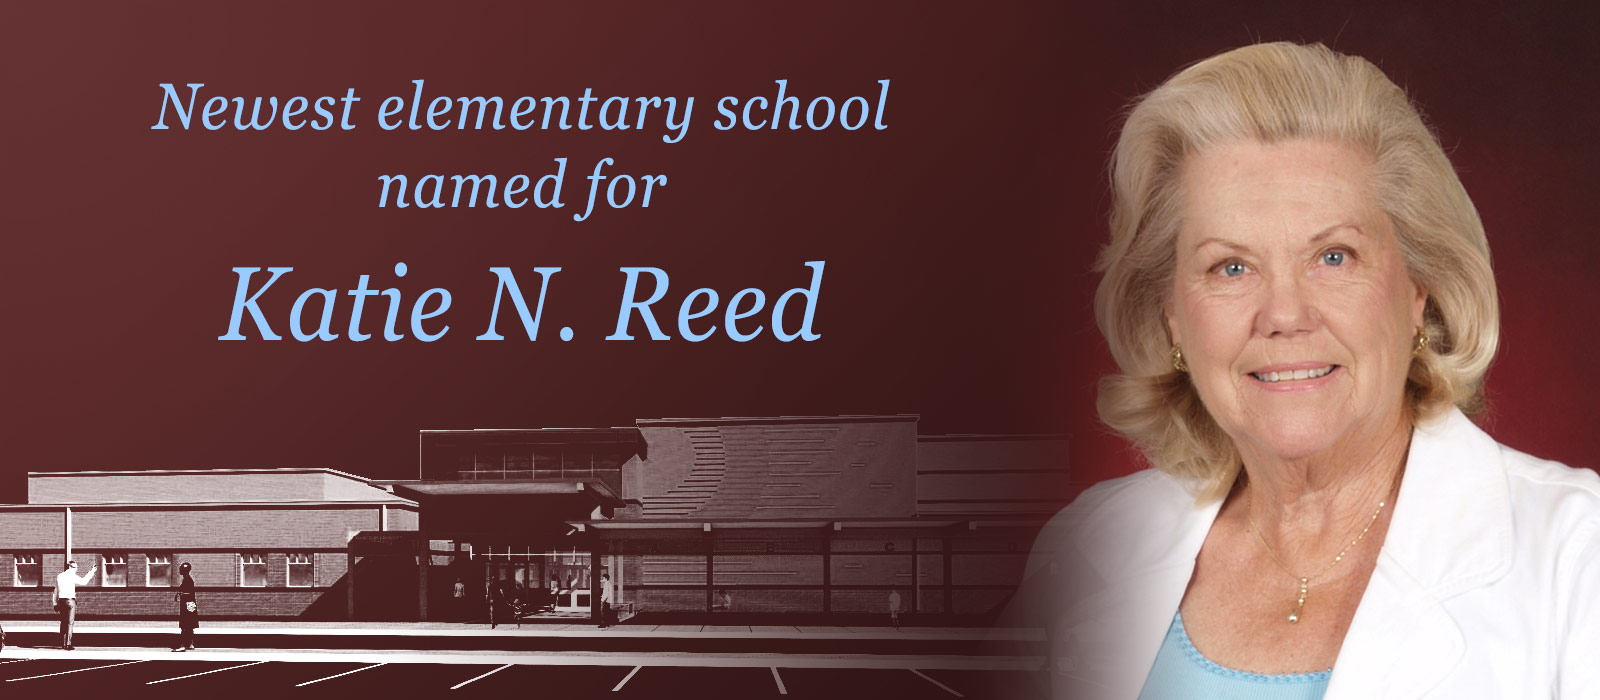 Board names elementary school after longestserving NISD Trustee